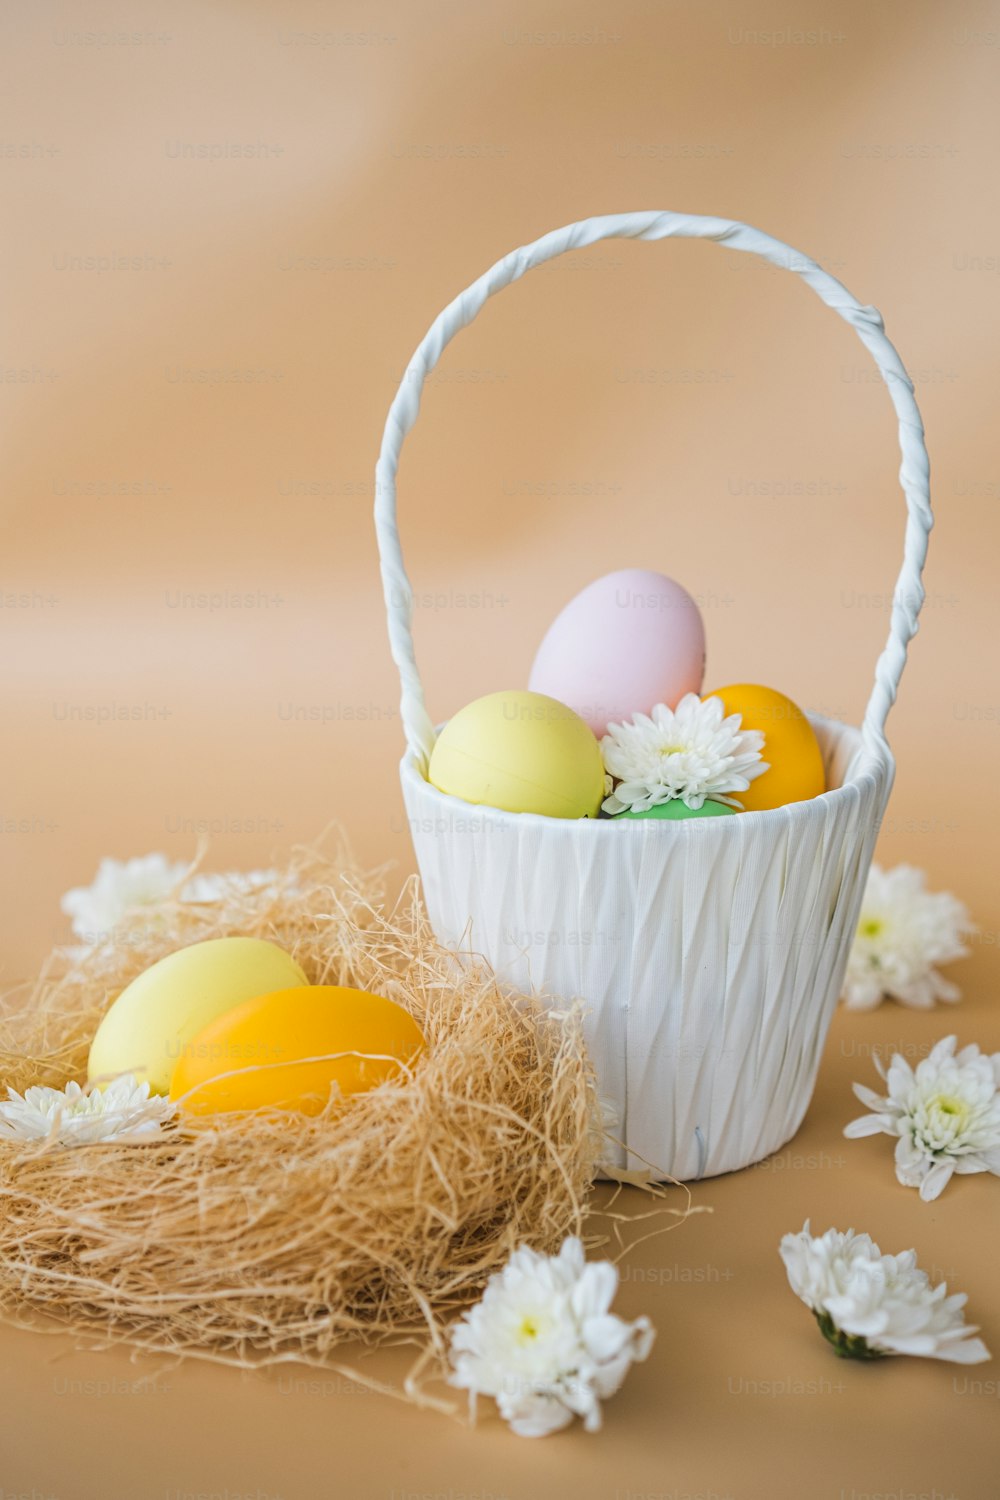 Una canasta blanca llena de huevos sentada encima de una mesa